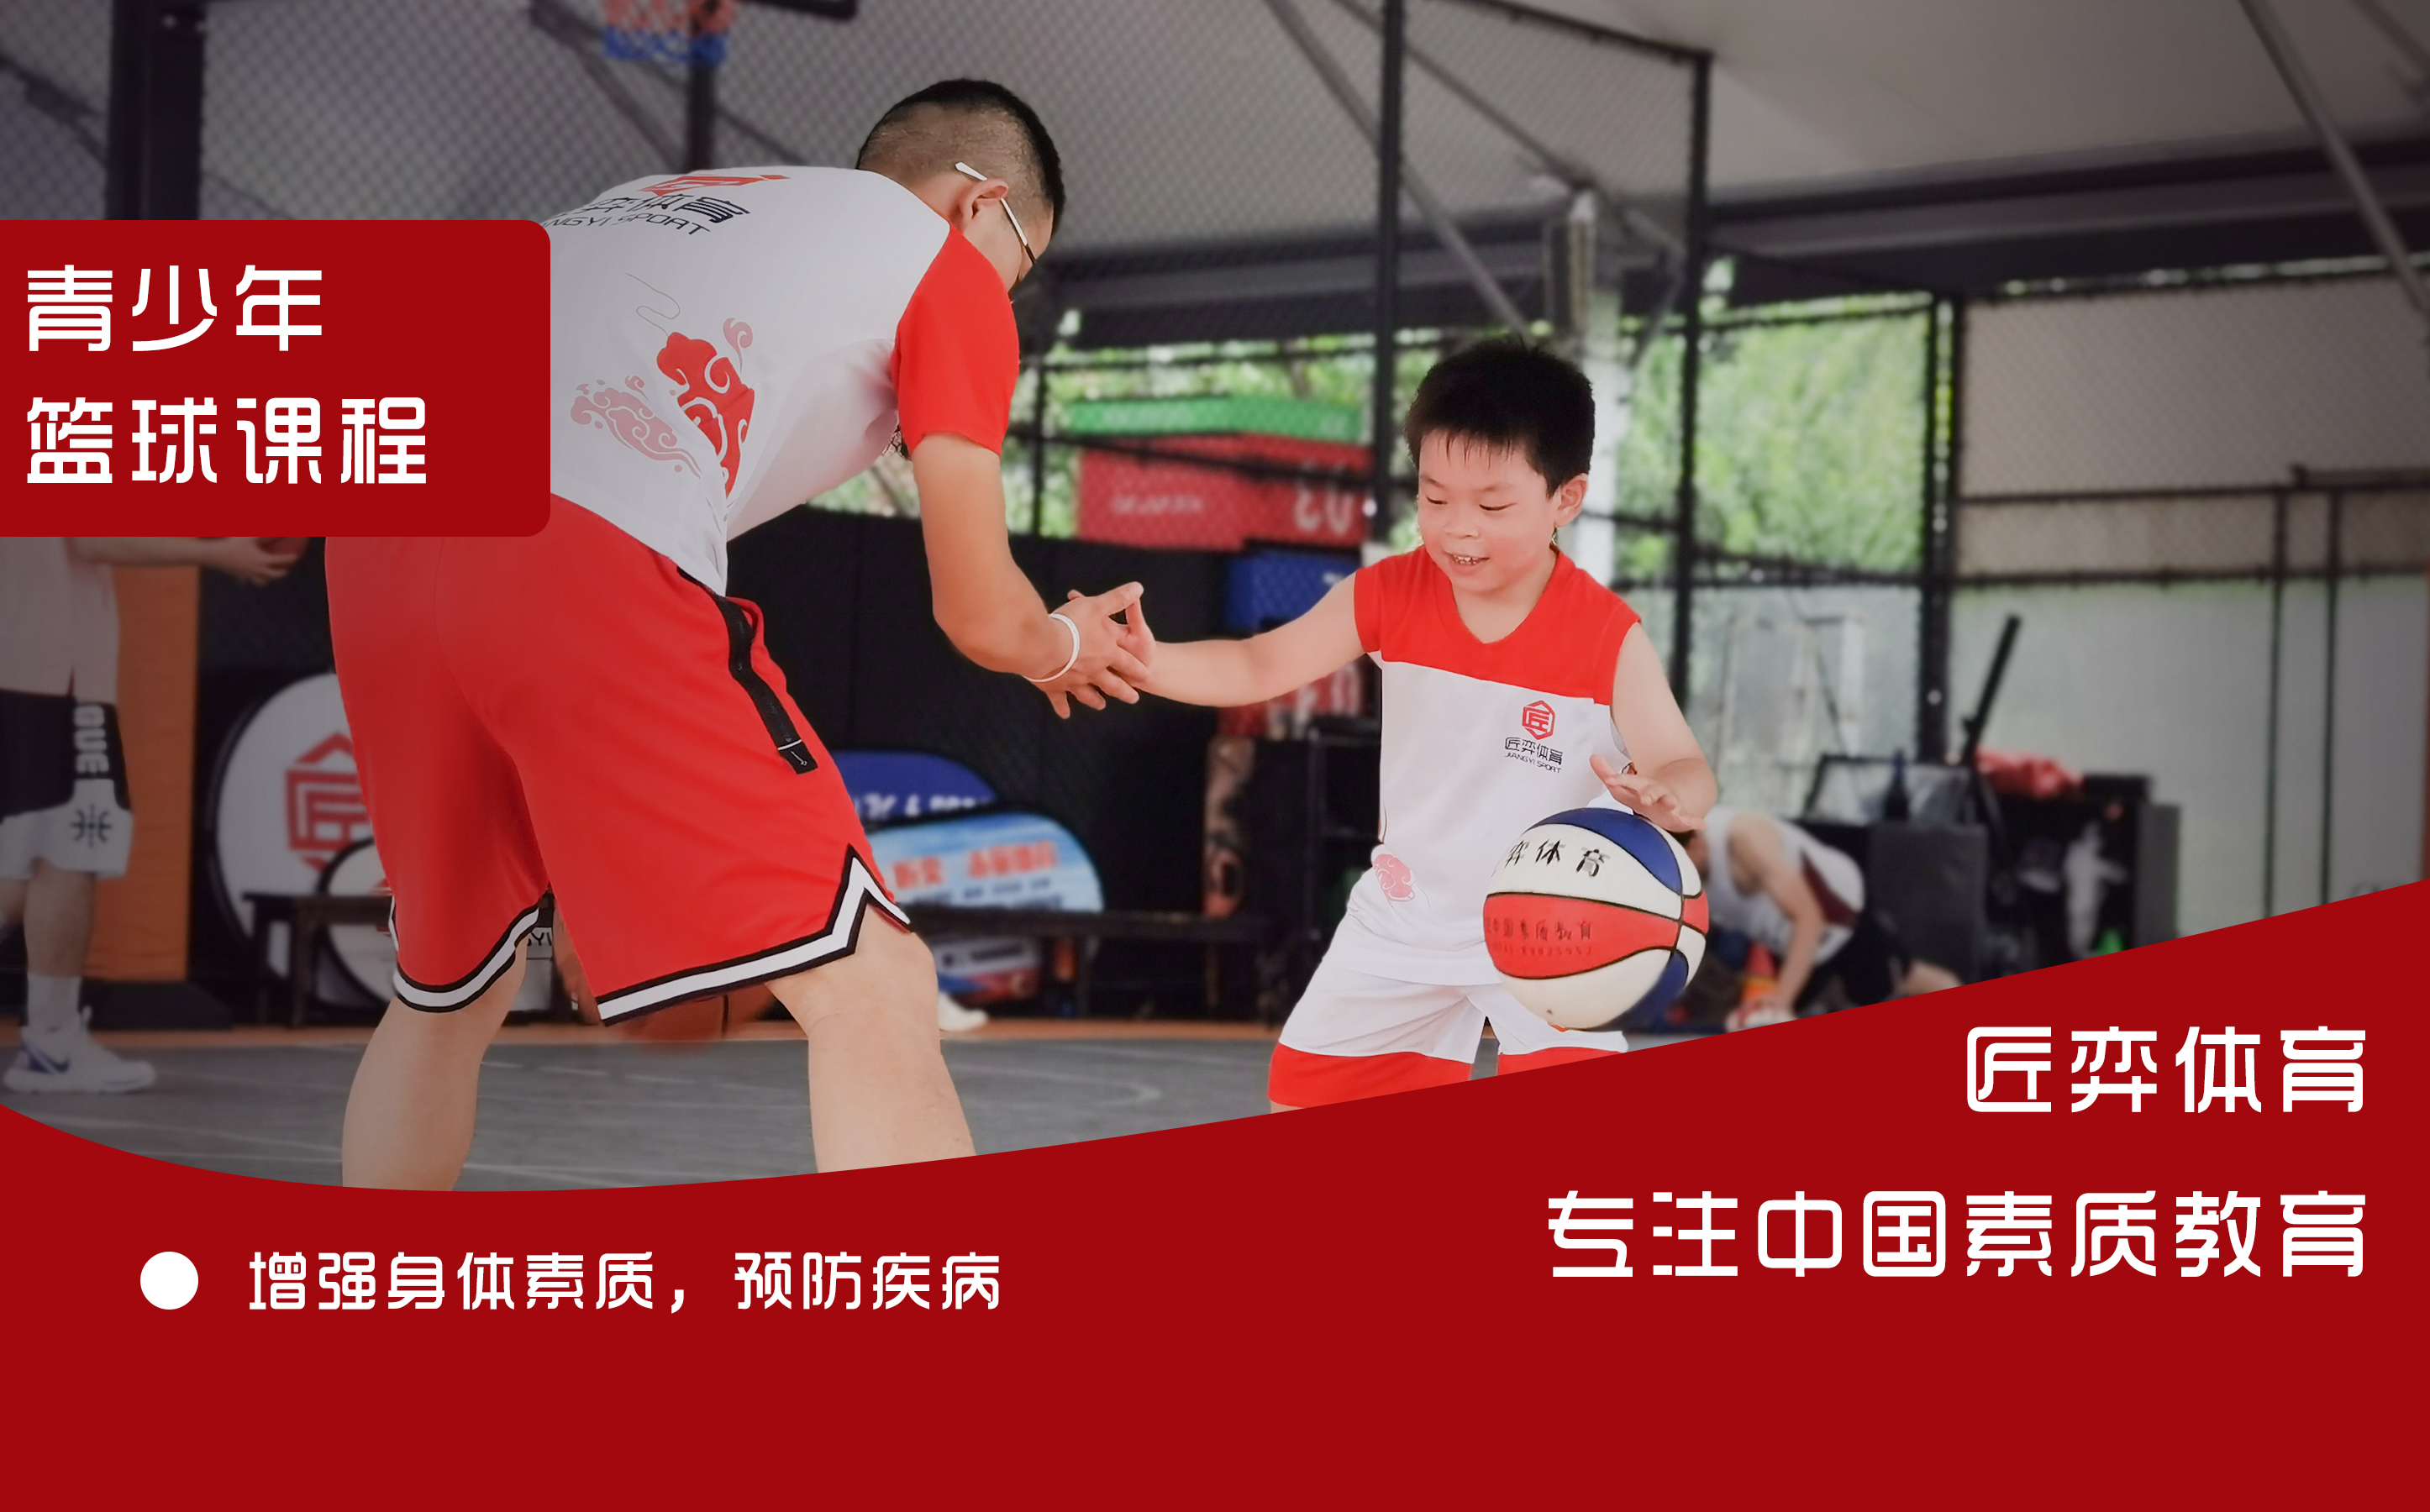 上海匠弈体育上海匠弈体育12-18岁篮球精英球队周末课图片